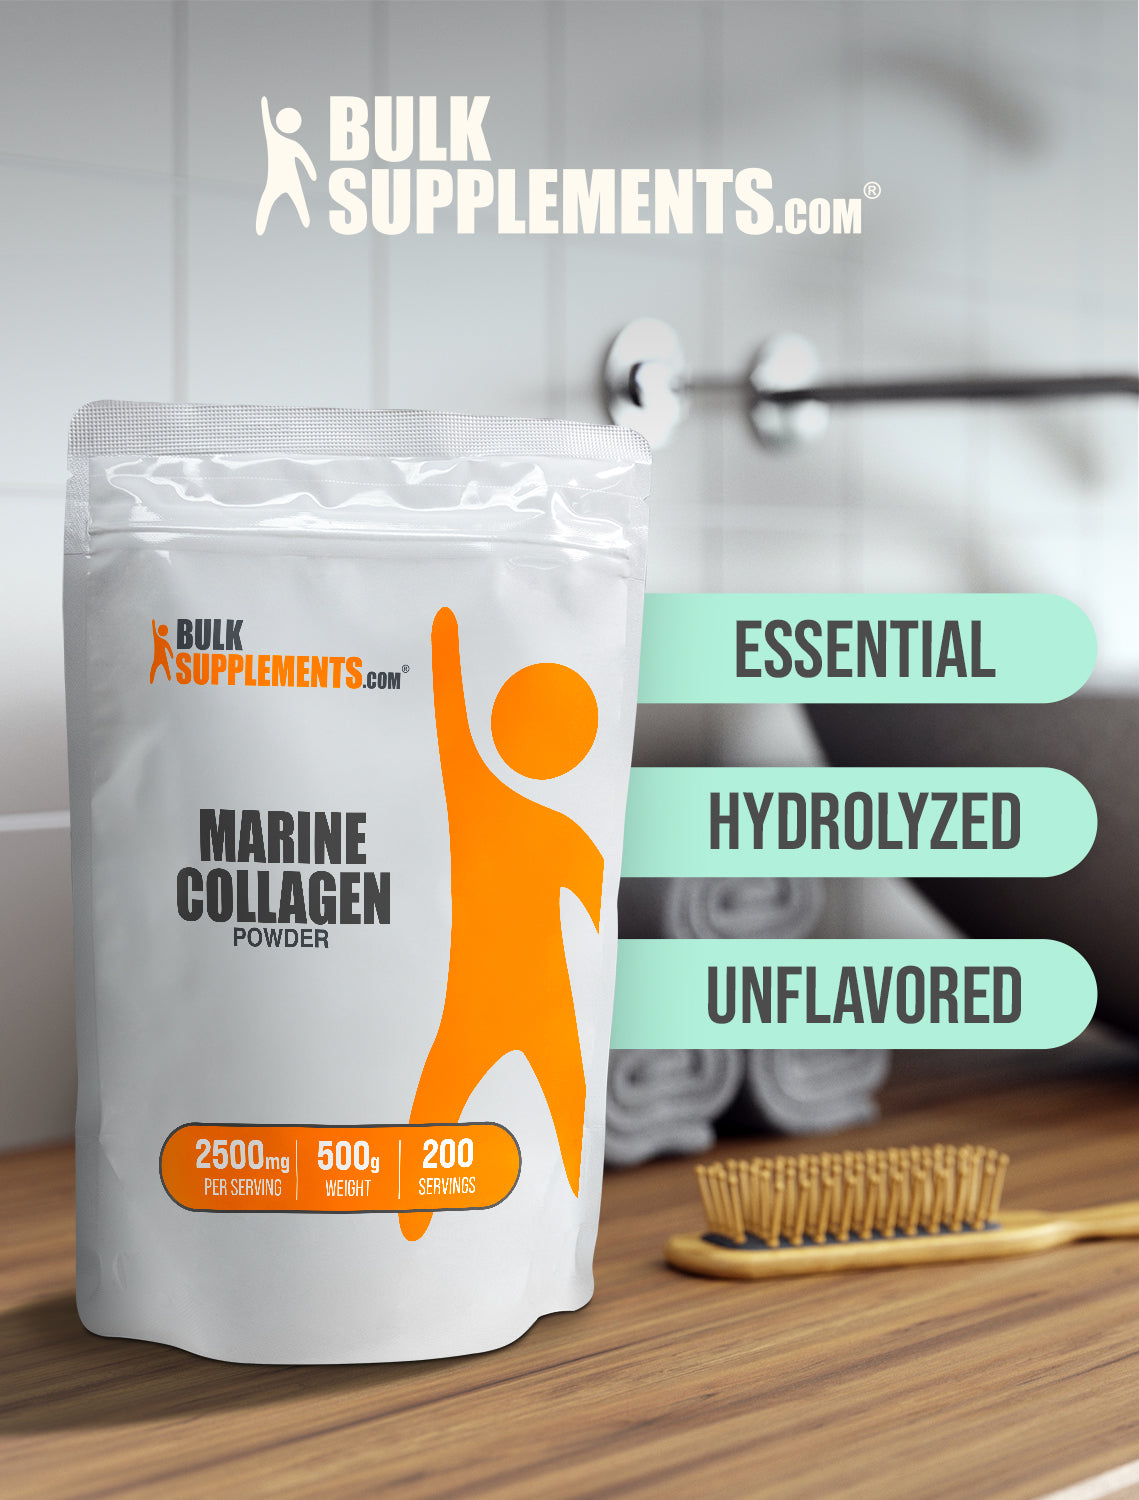 Marine collagen powder 500g keywords image